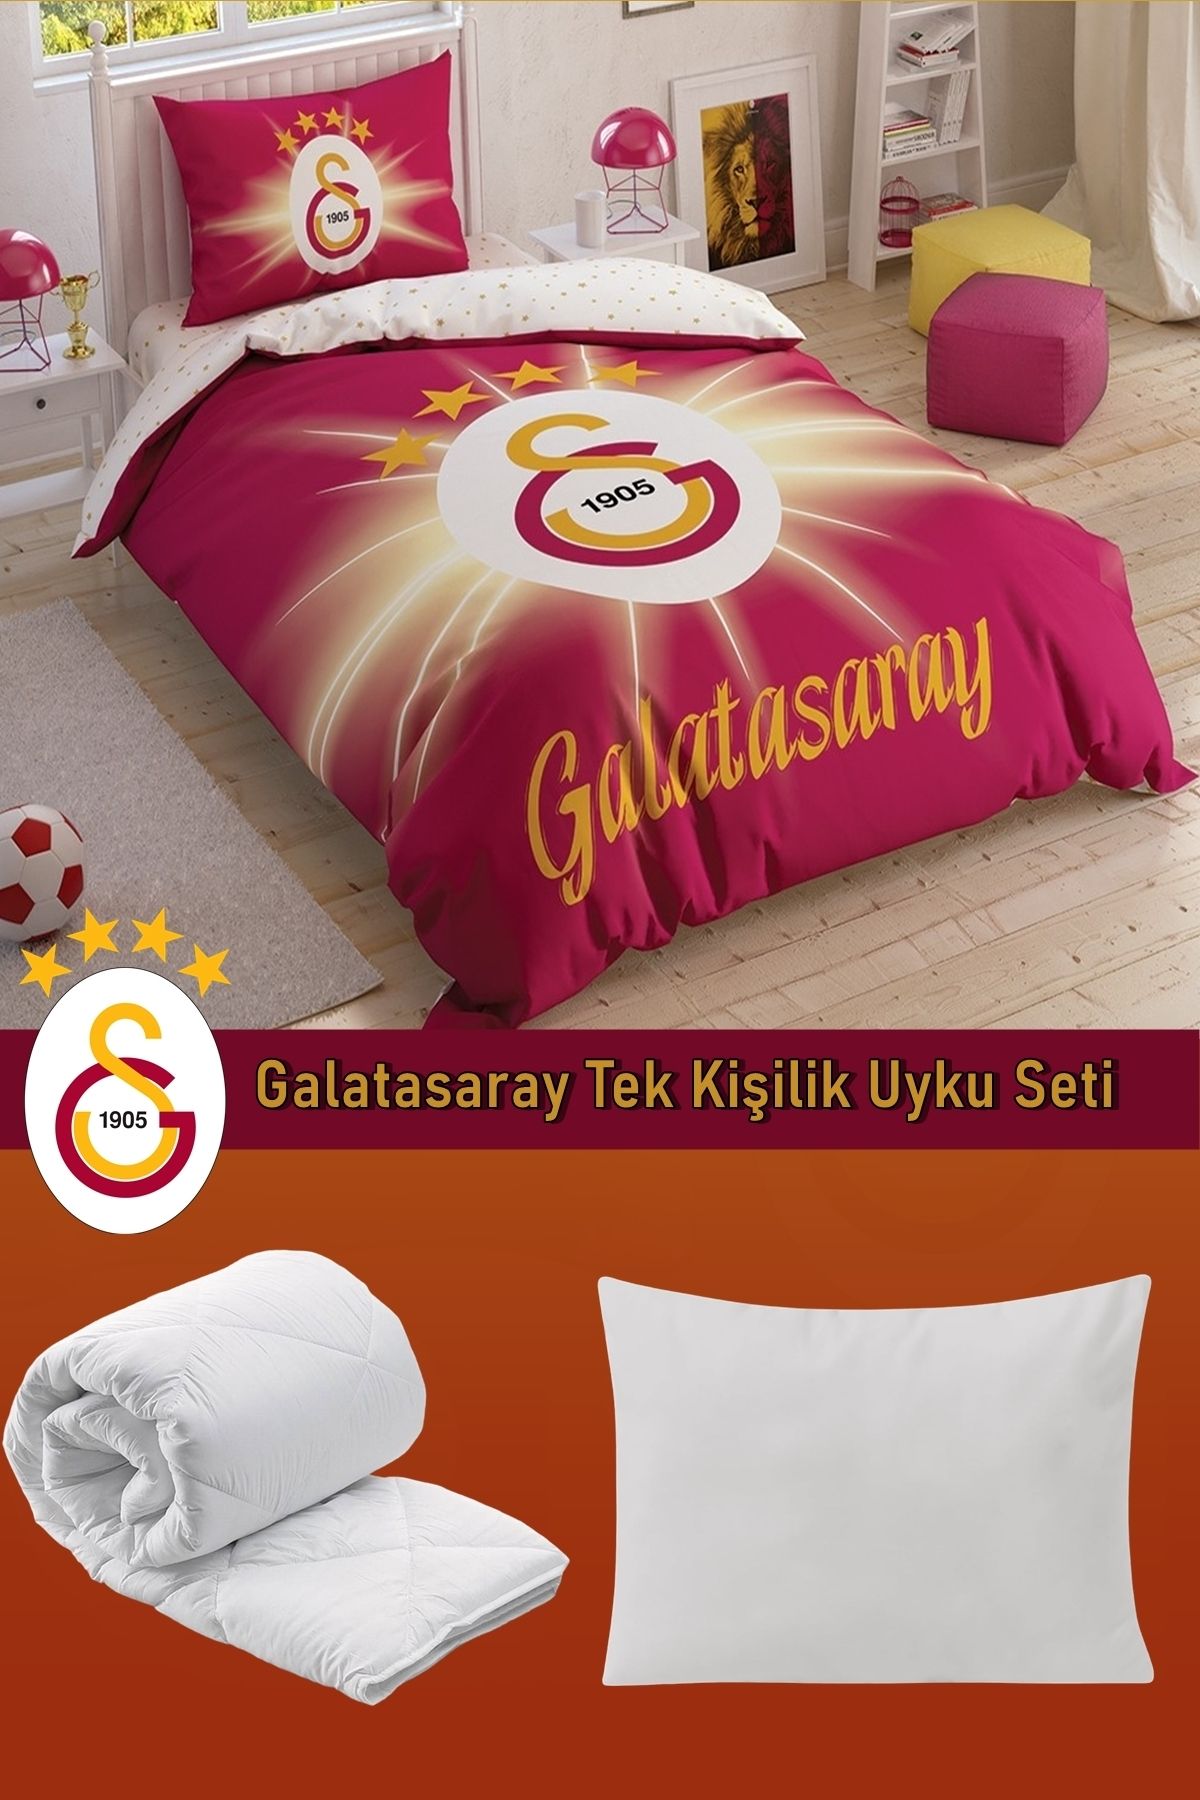 Taç Galatasaray Lisanslı 5 Parça Uyku Seti Yastık Hediyeli - Galatasaray Tek Kişilik Uyku Seti